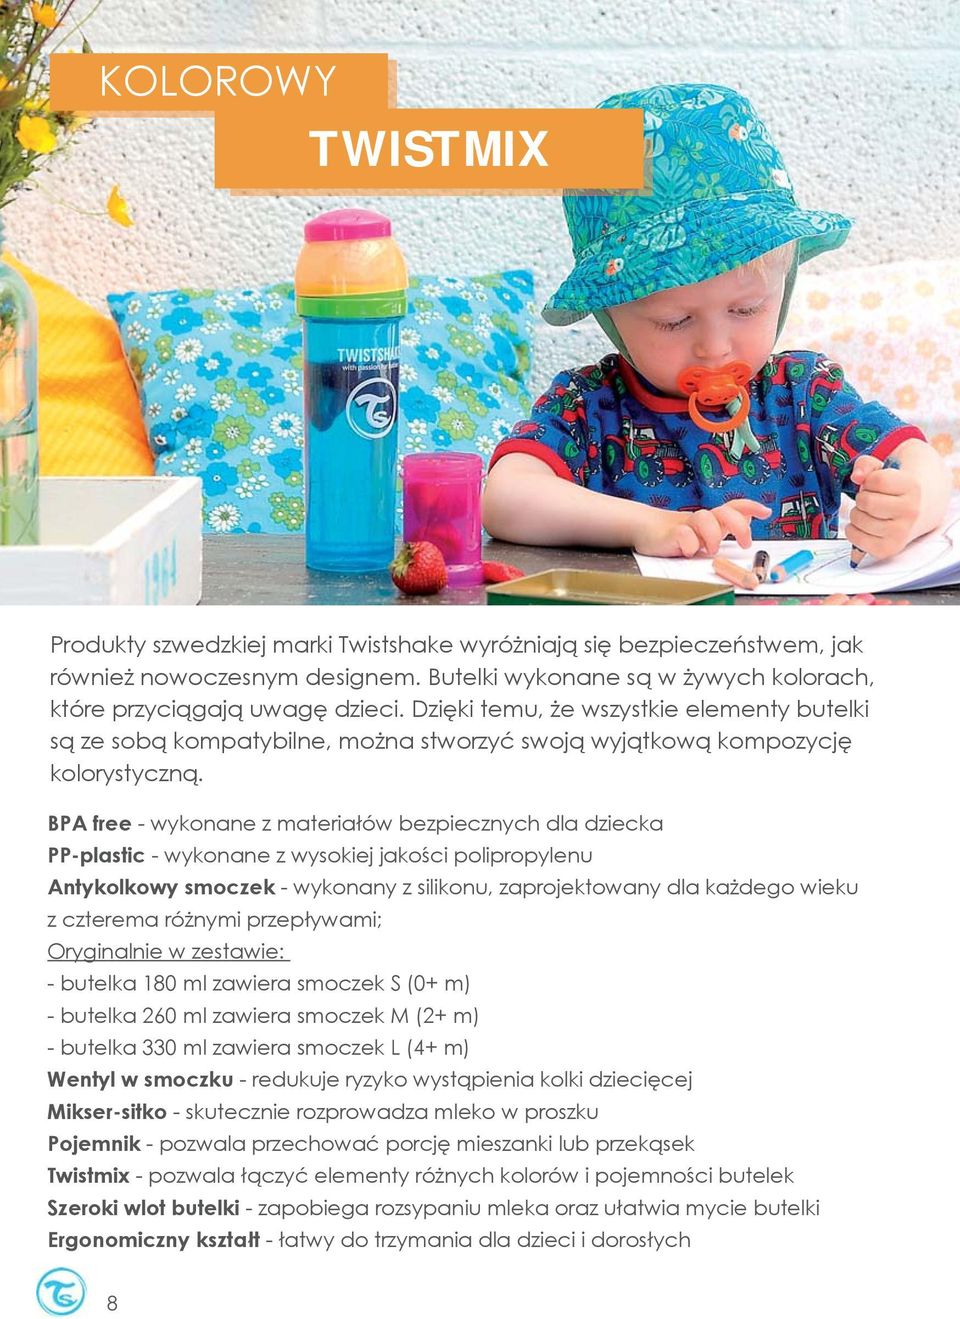 BPA free - wykonane z materiałów bezpiecznych dla dziecka PP-plastic - wykonane z wysokiej jakości polipropylenu Antykolkowy smoczek - wykonany z silikonu, zaprojektowany dla każdego wieku z czterema